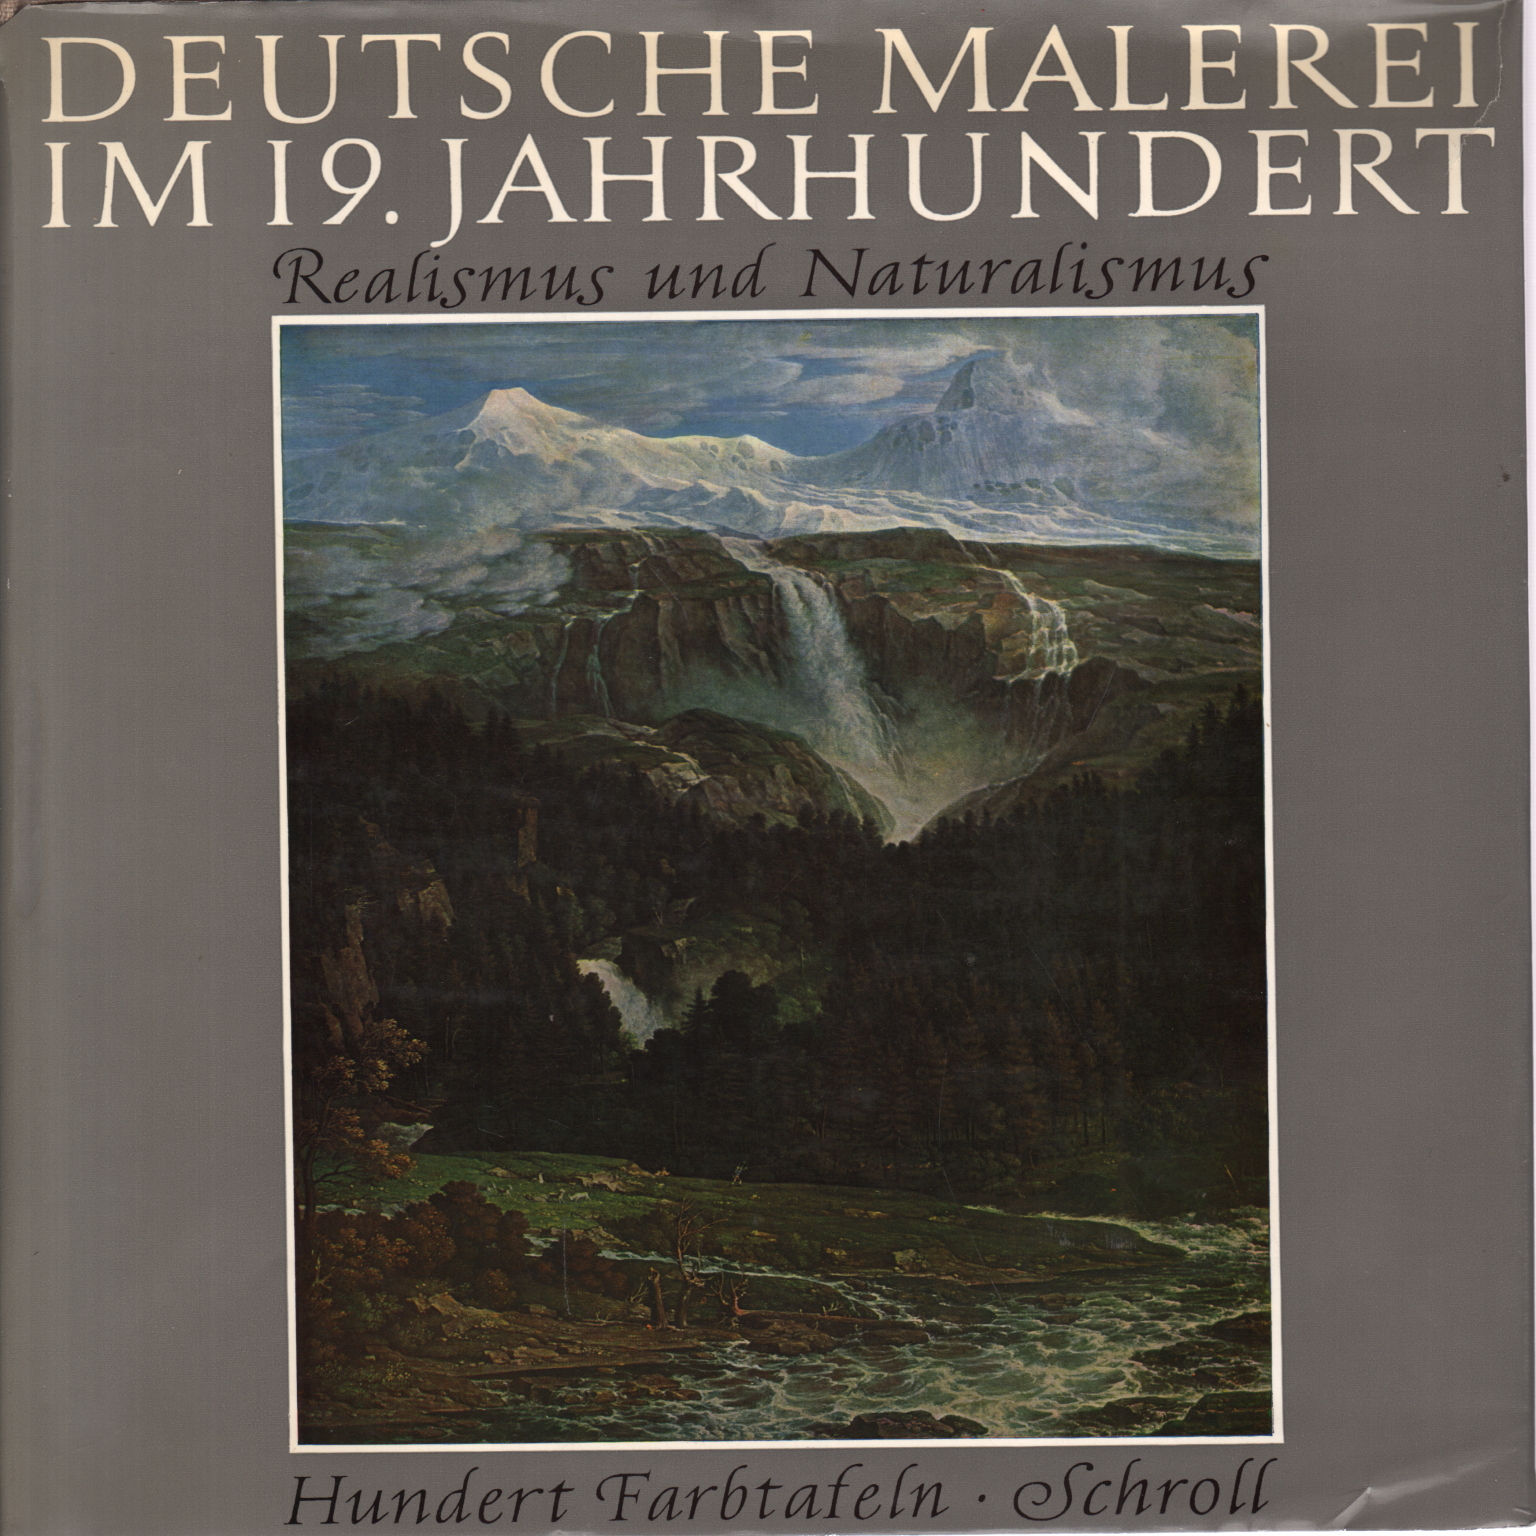 Deutsche Malerei im 19. Jahrhundert, Marie Buchsbaum